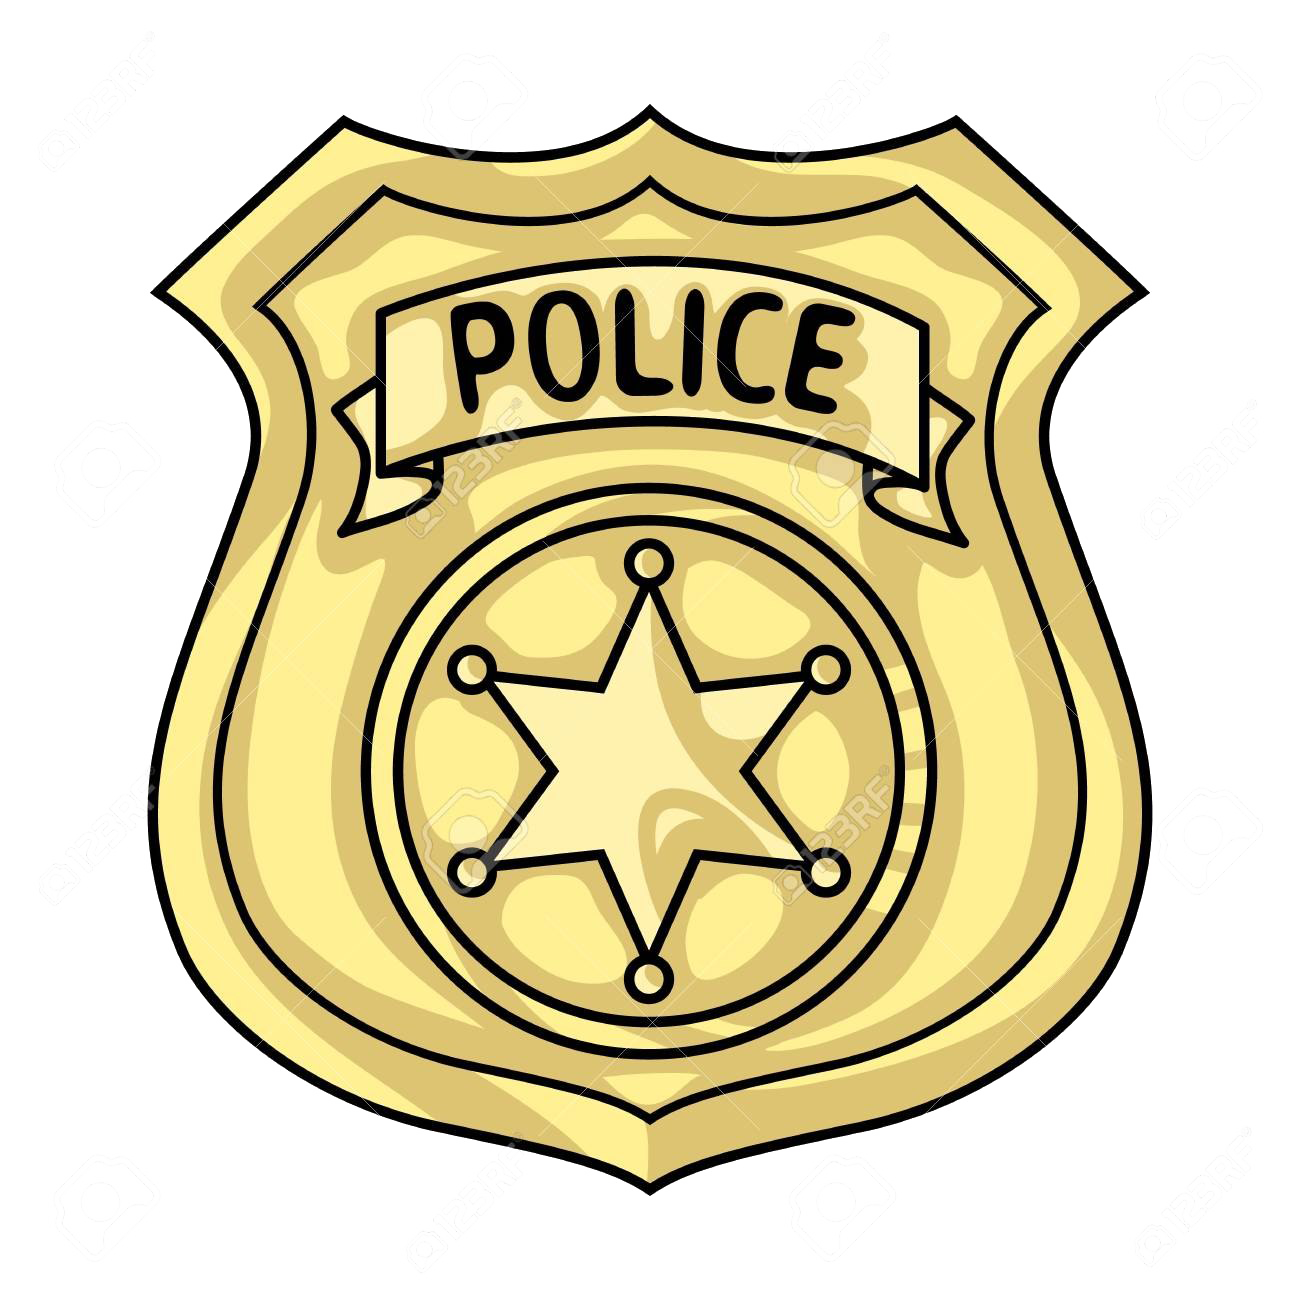 Download PNG image - Police Badge Transparent Background 